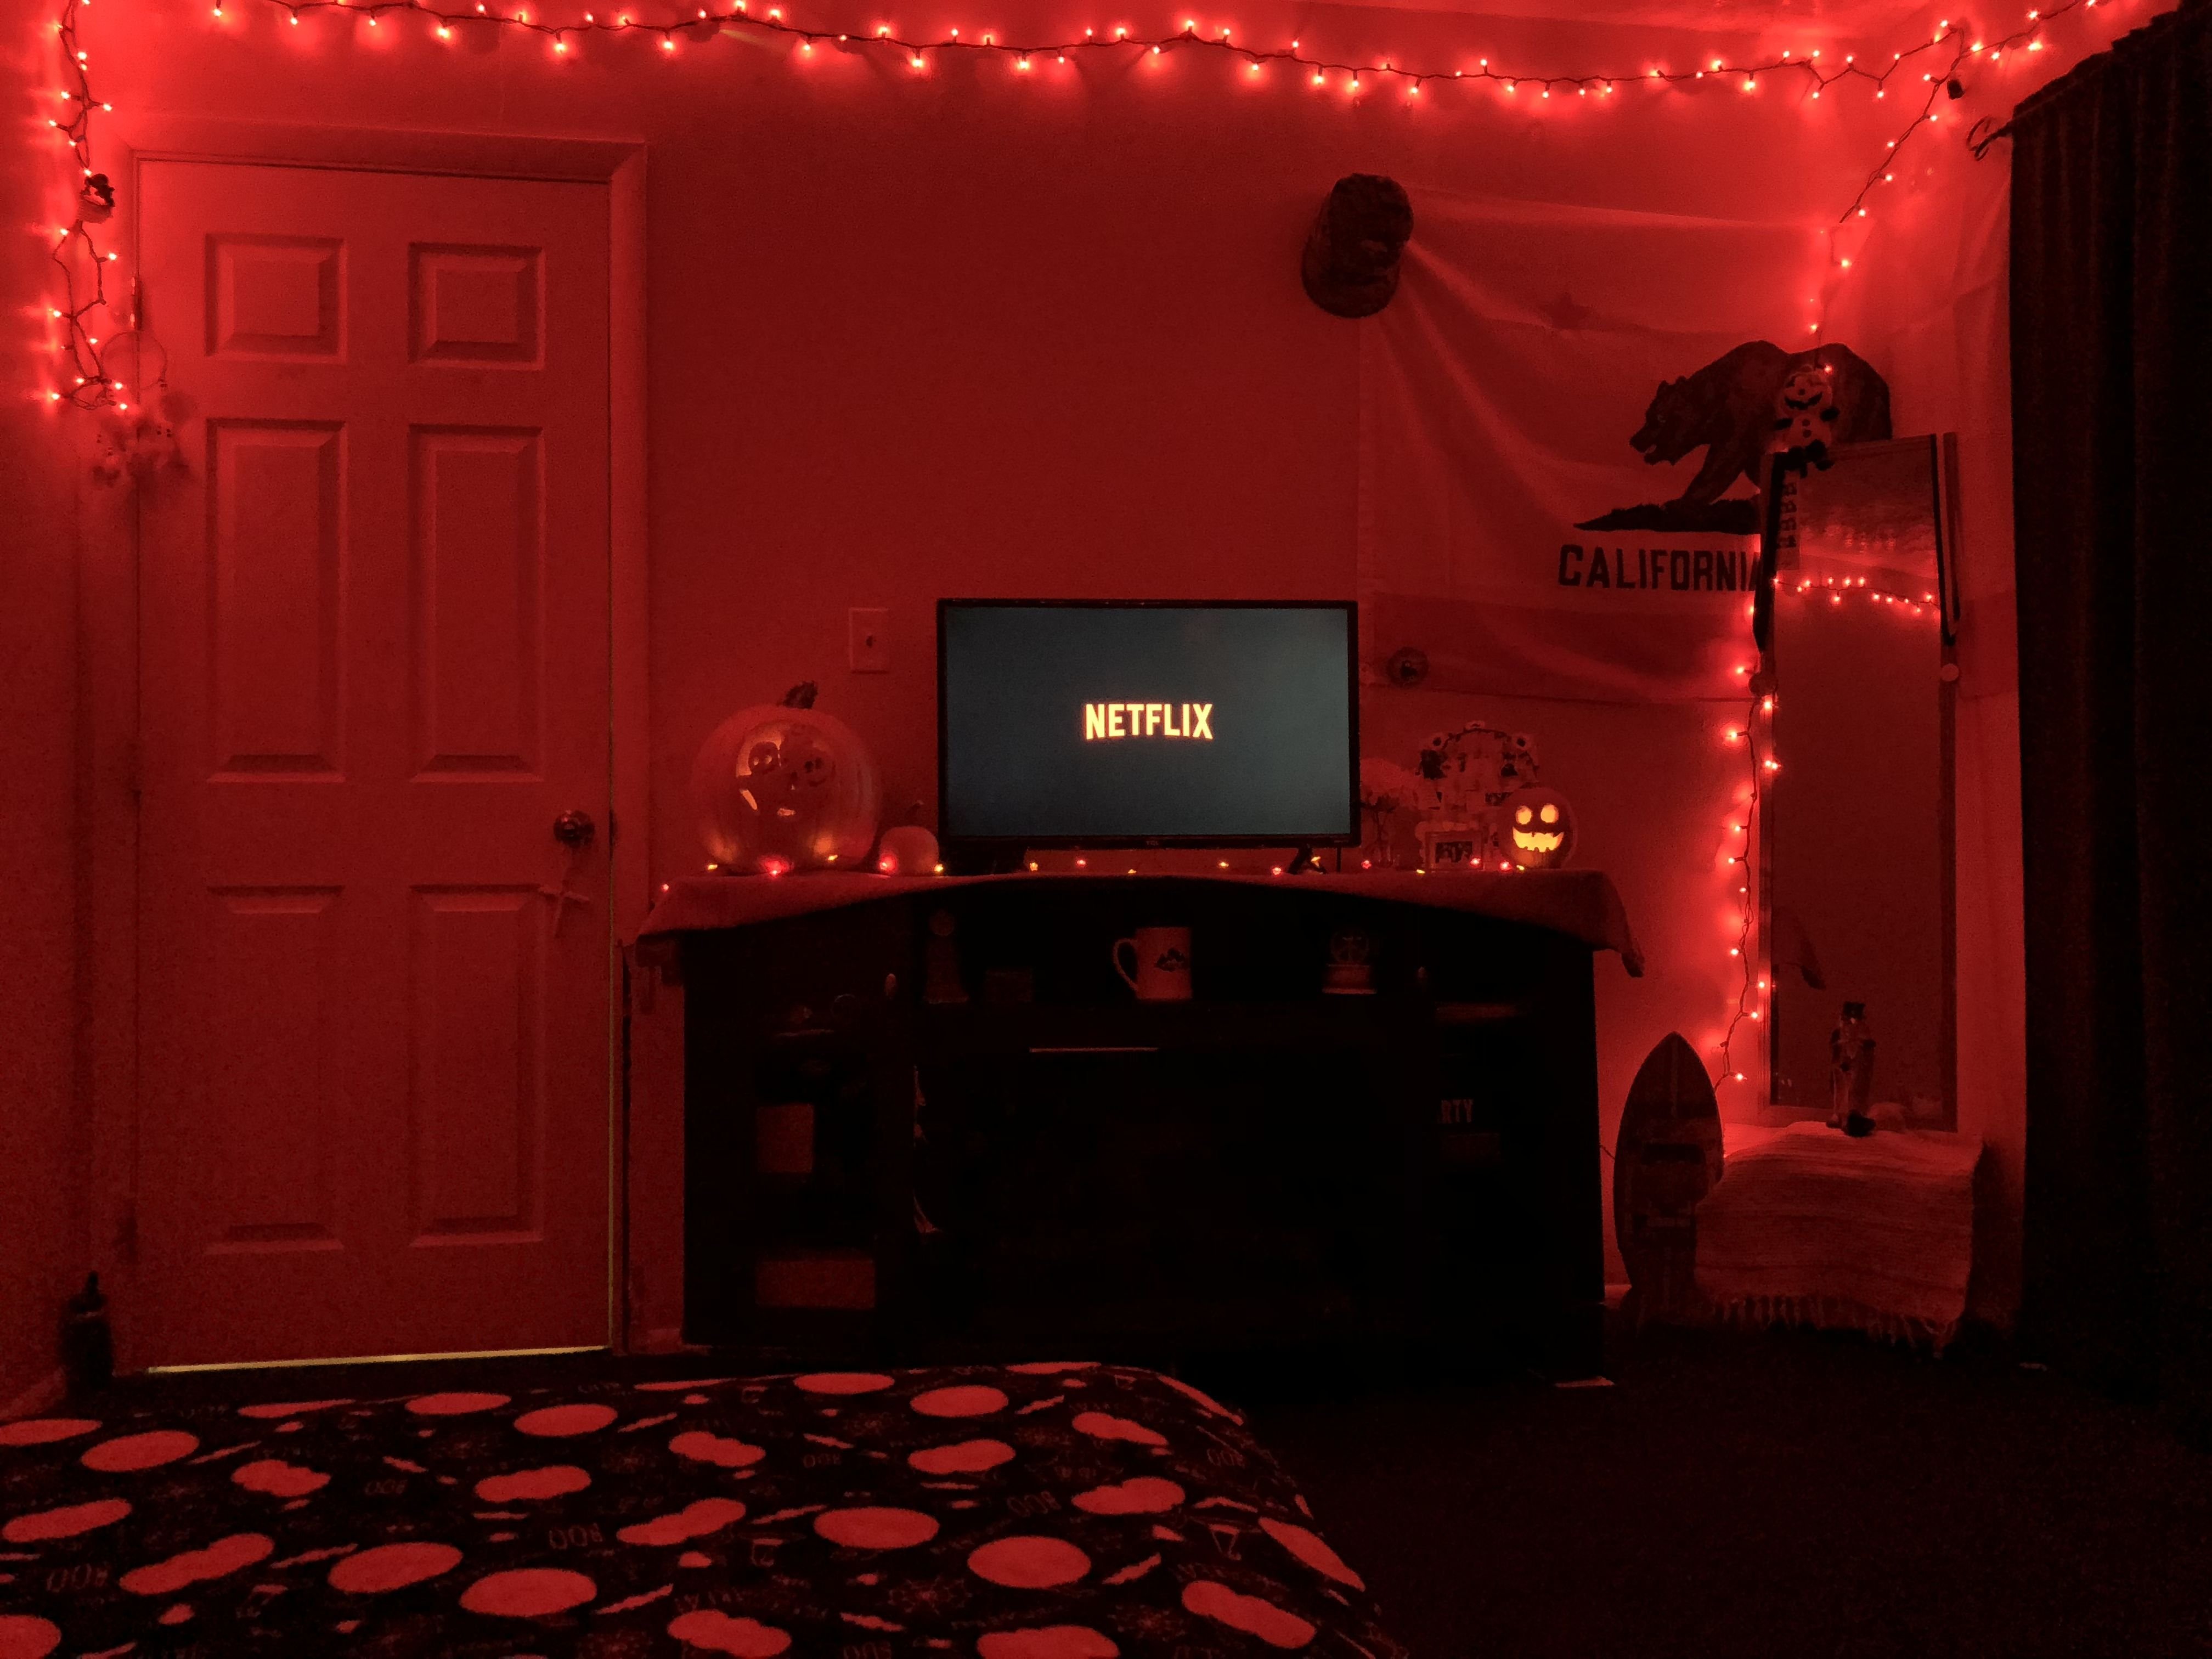 Красная комн. Red Room" красная комната  (1999) ужасы ". Уютная комната с красной подсветкой. Комната в Красном неоне. Комната с красной подсветкой.